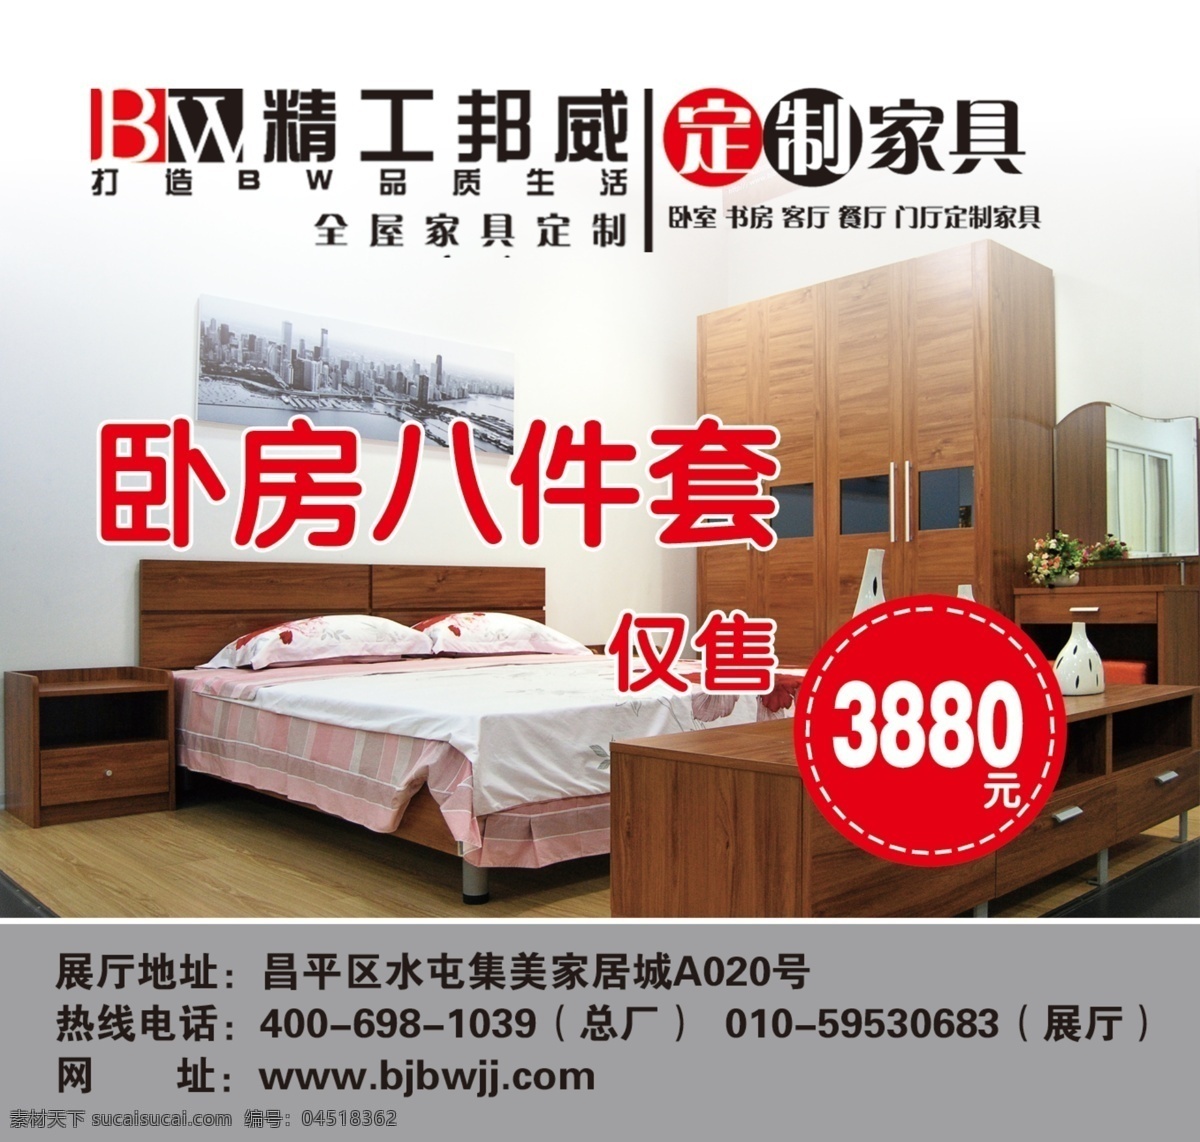 北京邦威家具 邦威家具 特价商品 床具 广告设计模板 源文件